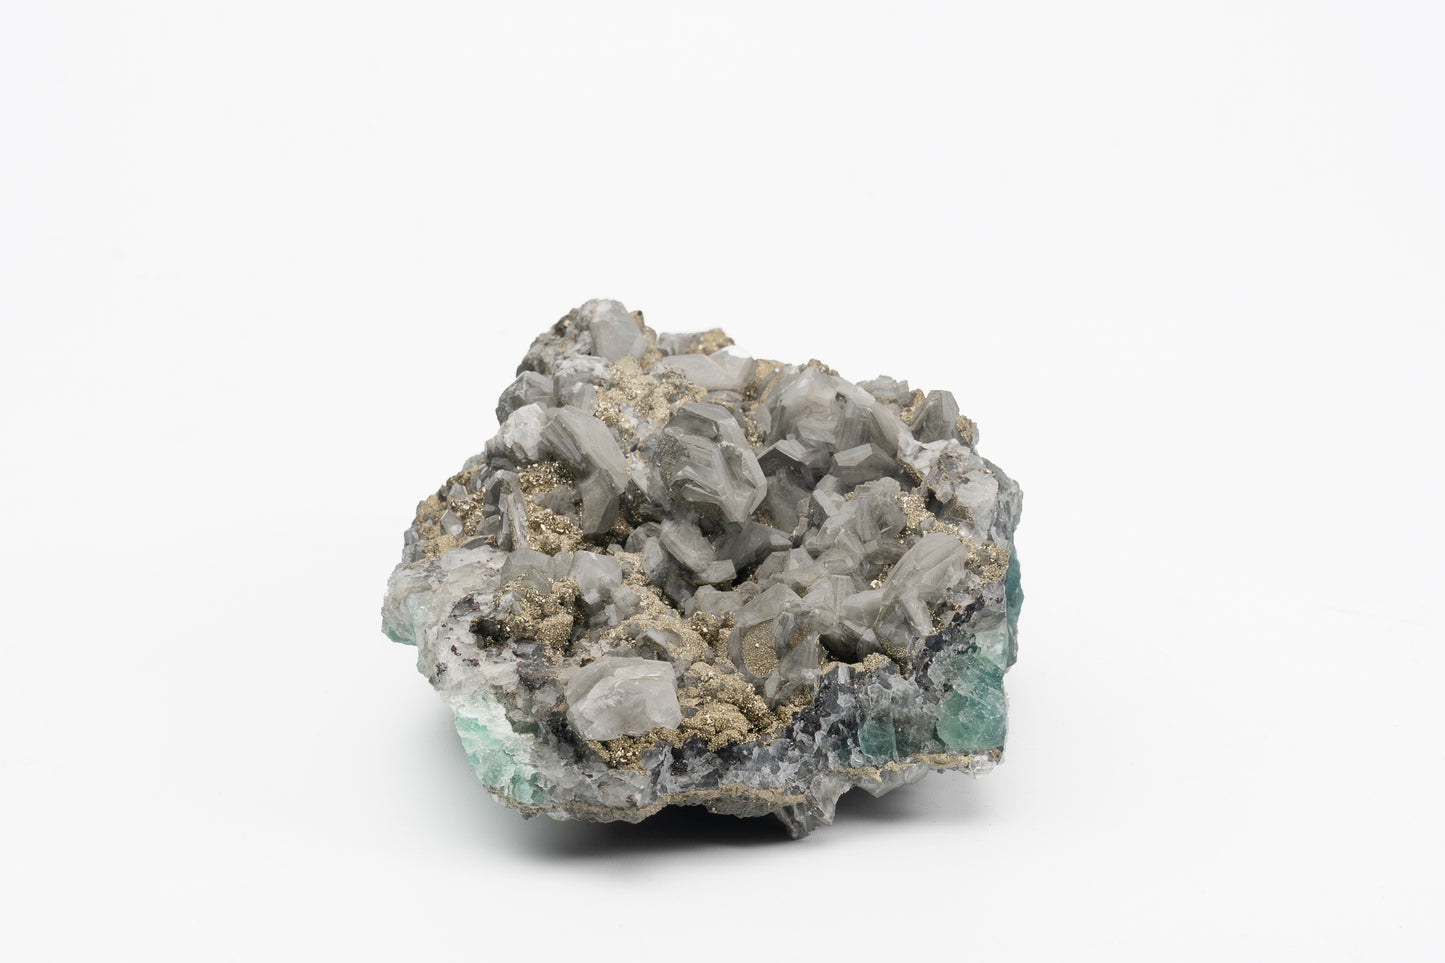 Green Fluorite, Barite, Pyrite Specimen | Unique Rocks